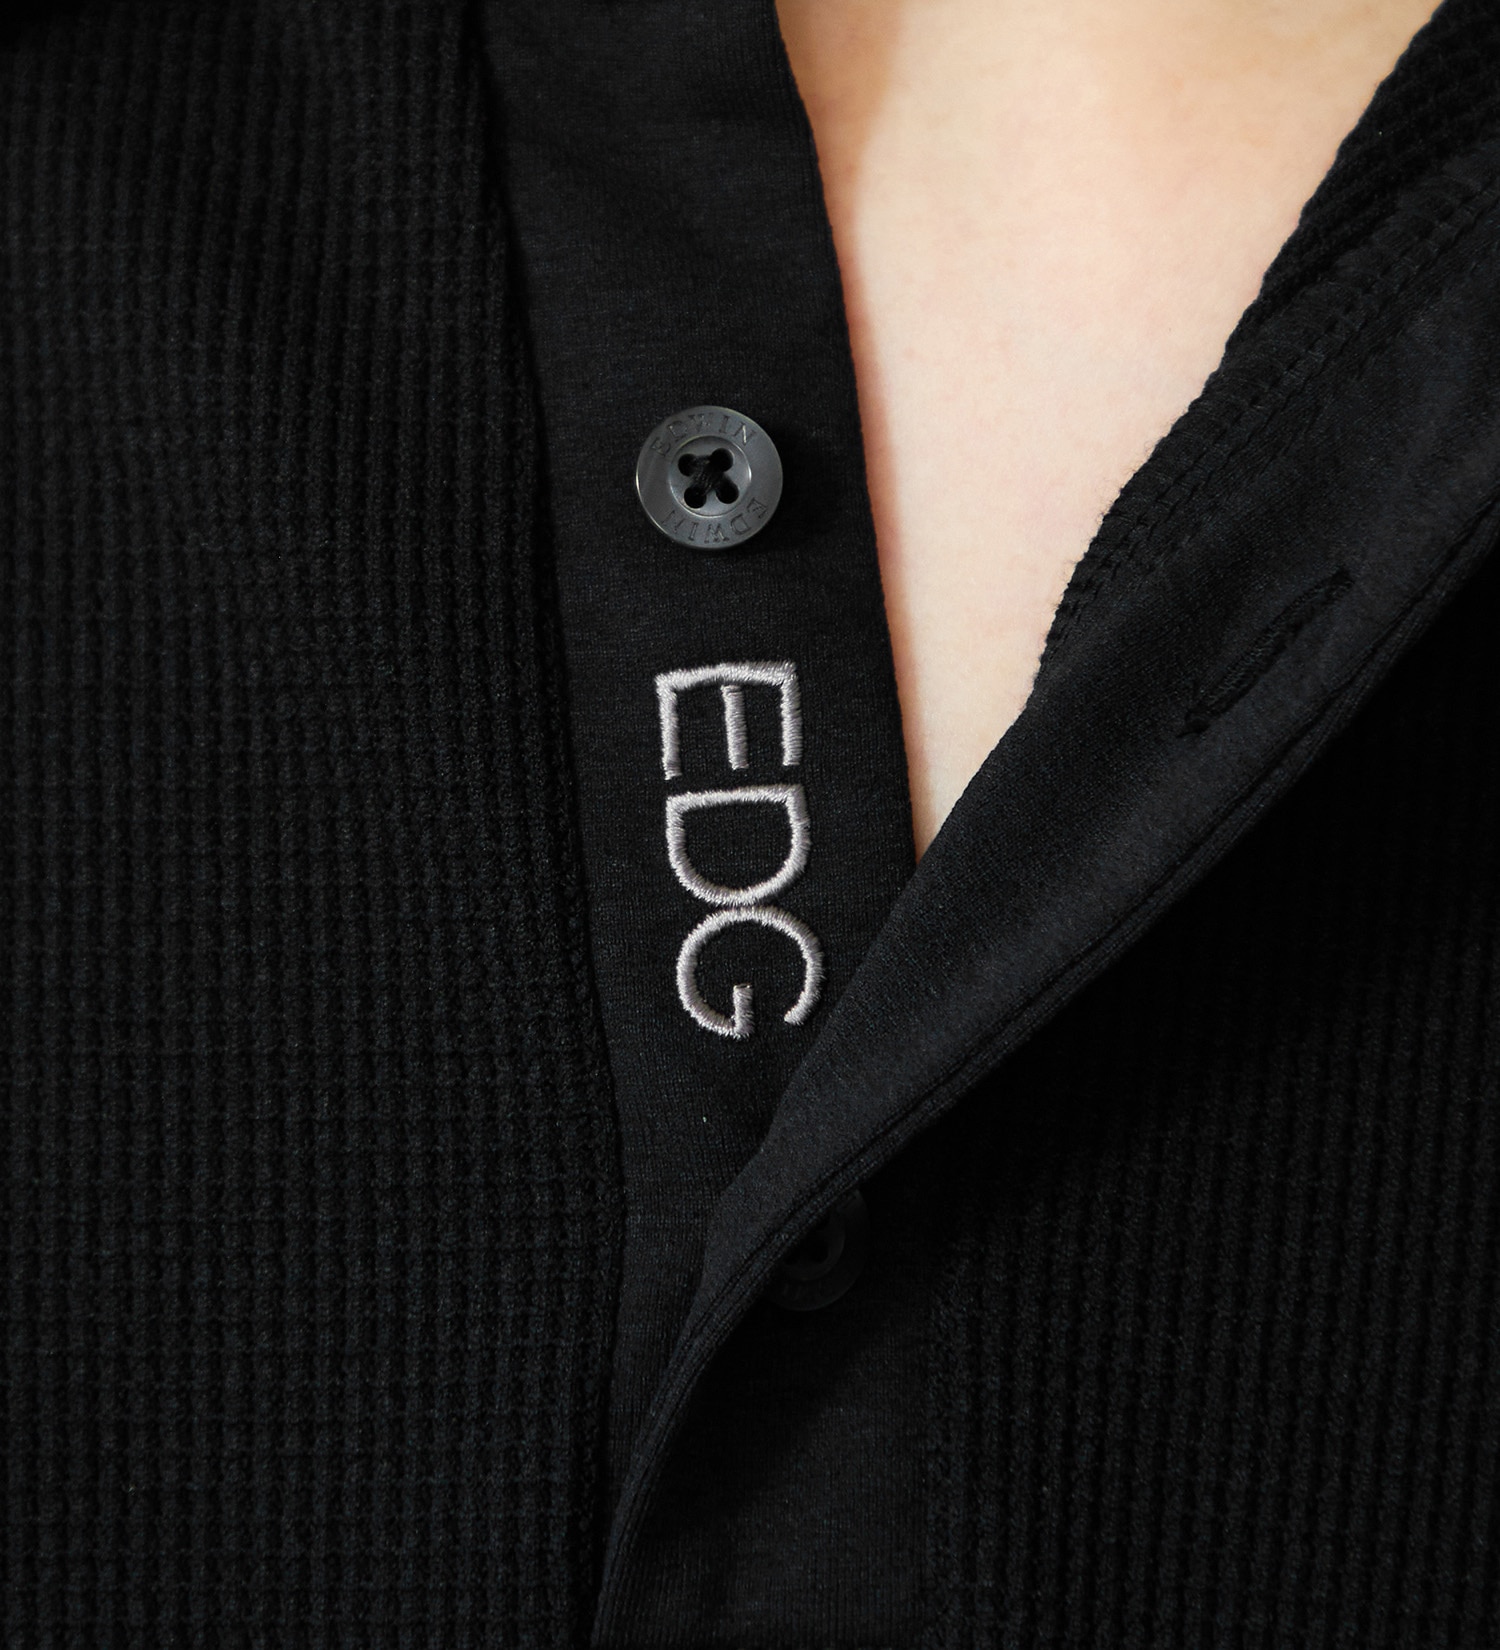 EDWIN(エドウイン)のEDWIN GOLF ミニワッフルポロシャツ半袖Tシャツ|トップス/Tシャツ/カットソー/メンズ|ブラック